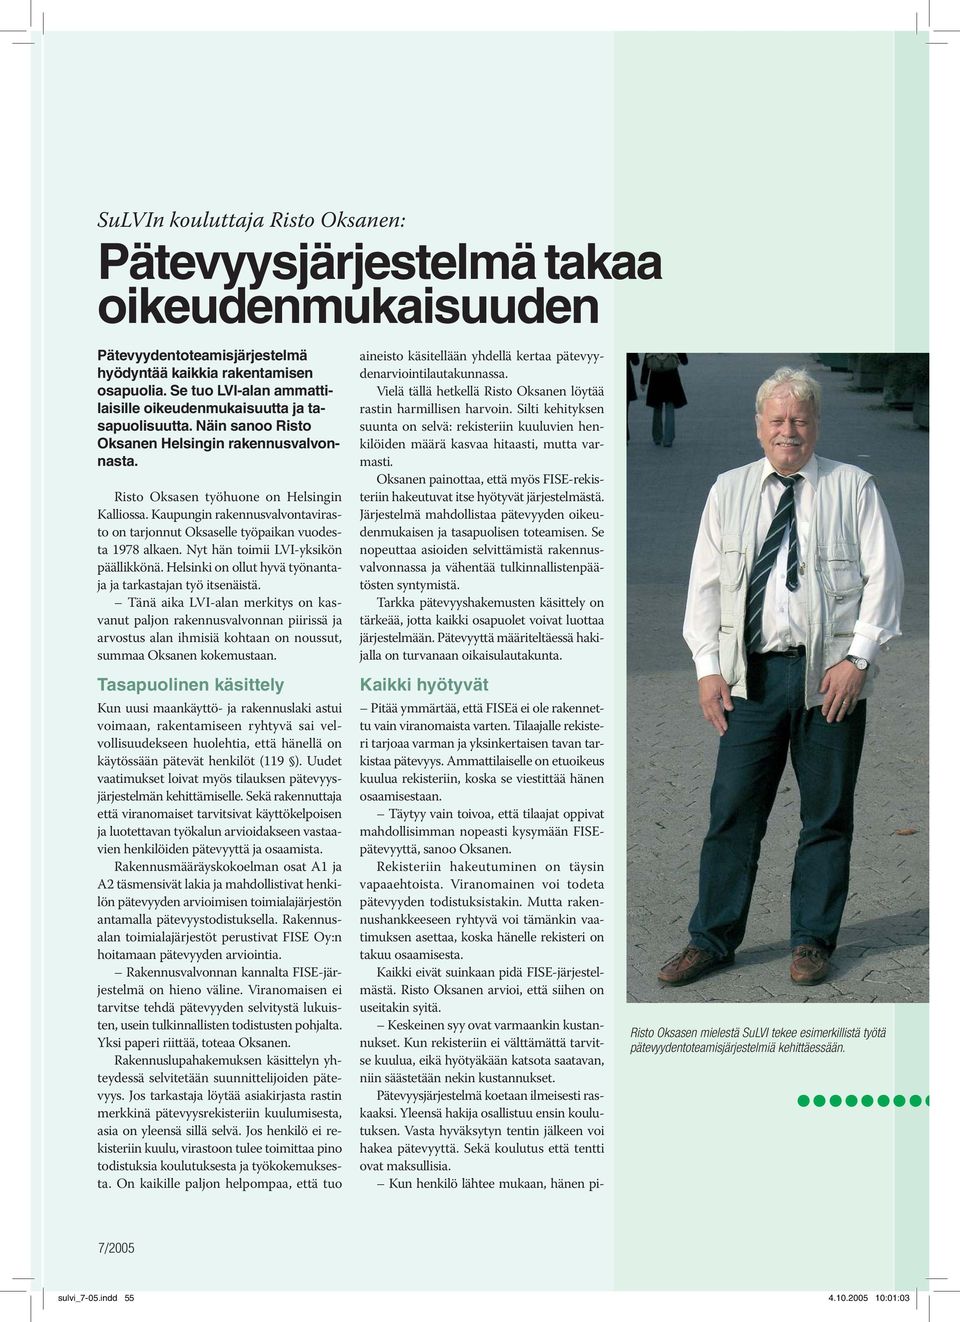 Kaupungin rakennusvalvontavirasto on tarjonnut Oksaselle työpaikan vuodesta 1978 alkaen. Nyt hän toimii LVI-yksikön päällikkönä. Helsinki on ollut hyvä työnantaja ja tarkastajan työ itsenäistä.